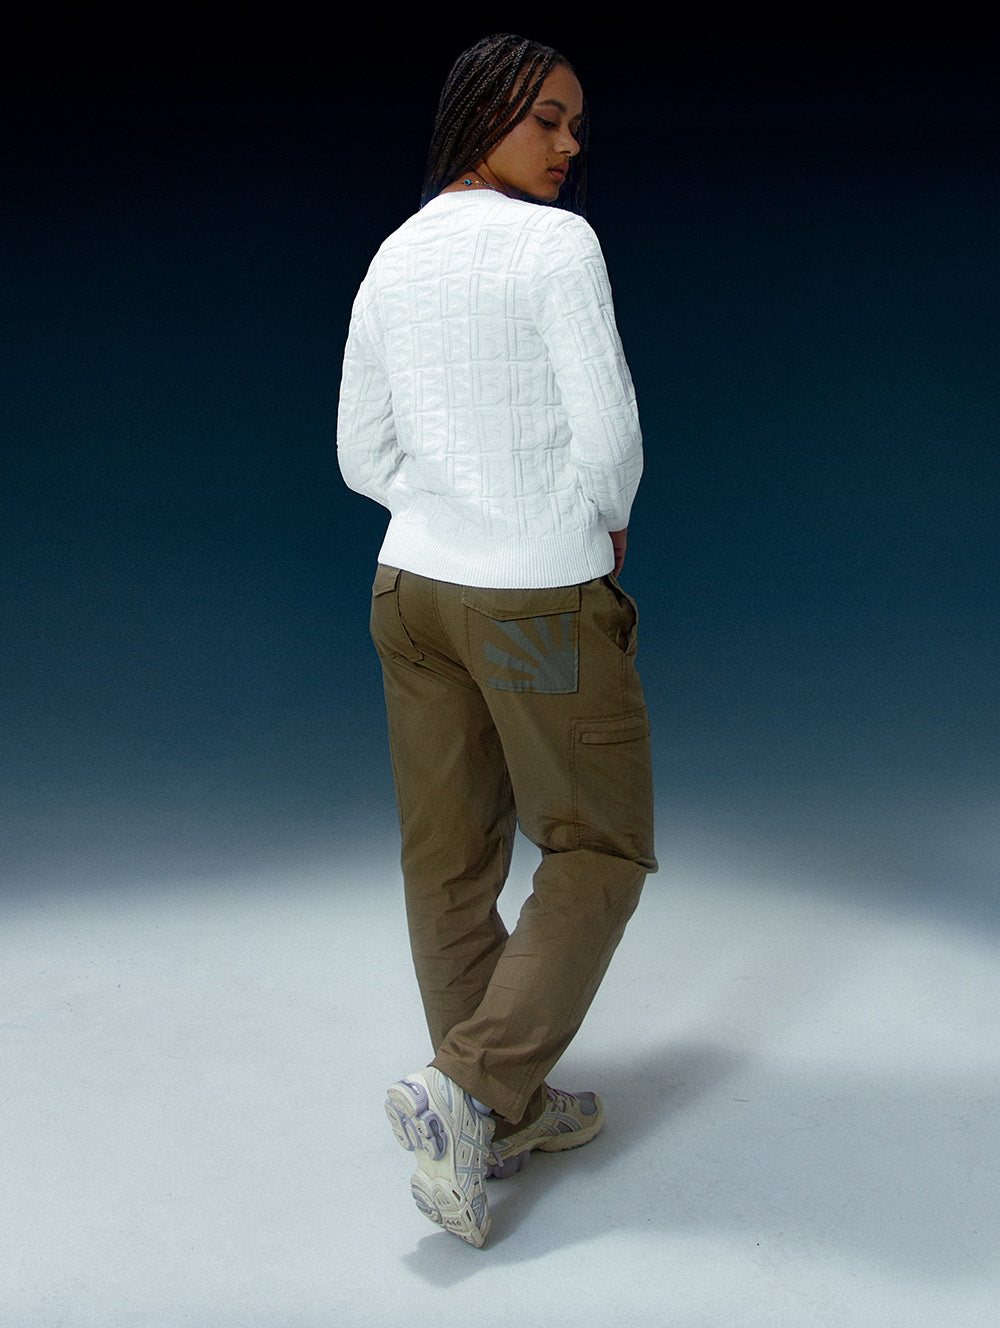 Mallow Fleece Half Zip Pullover - Studio White, Women's Sweaters + Hoodies